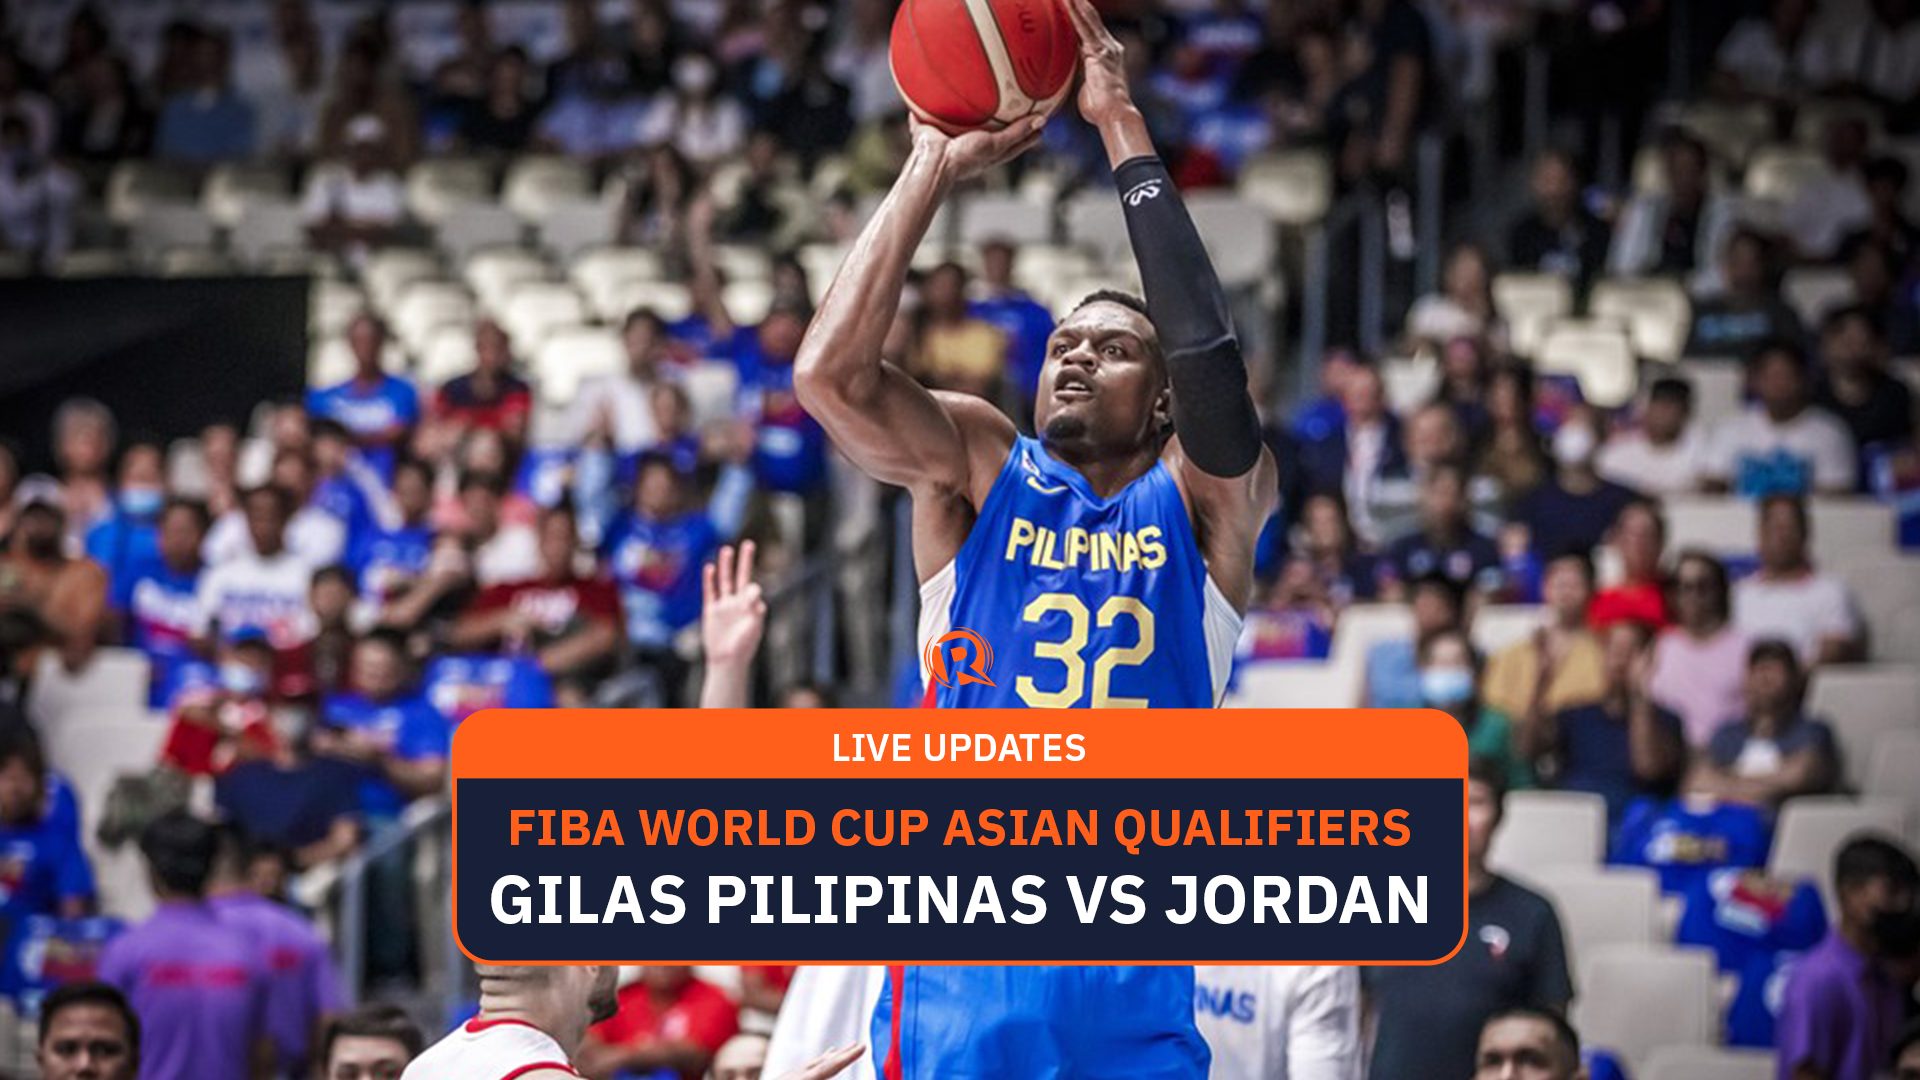 HIGHLIGHTS Philippines vs Jordan